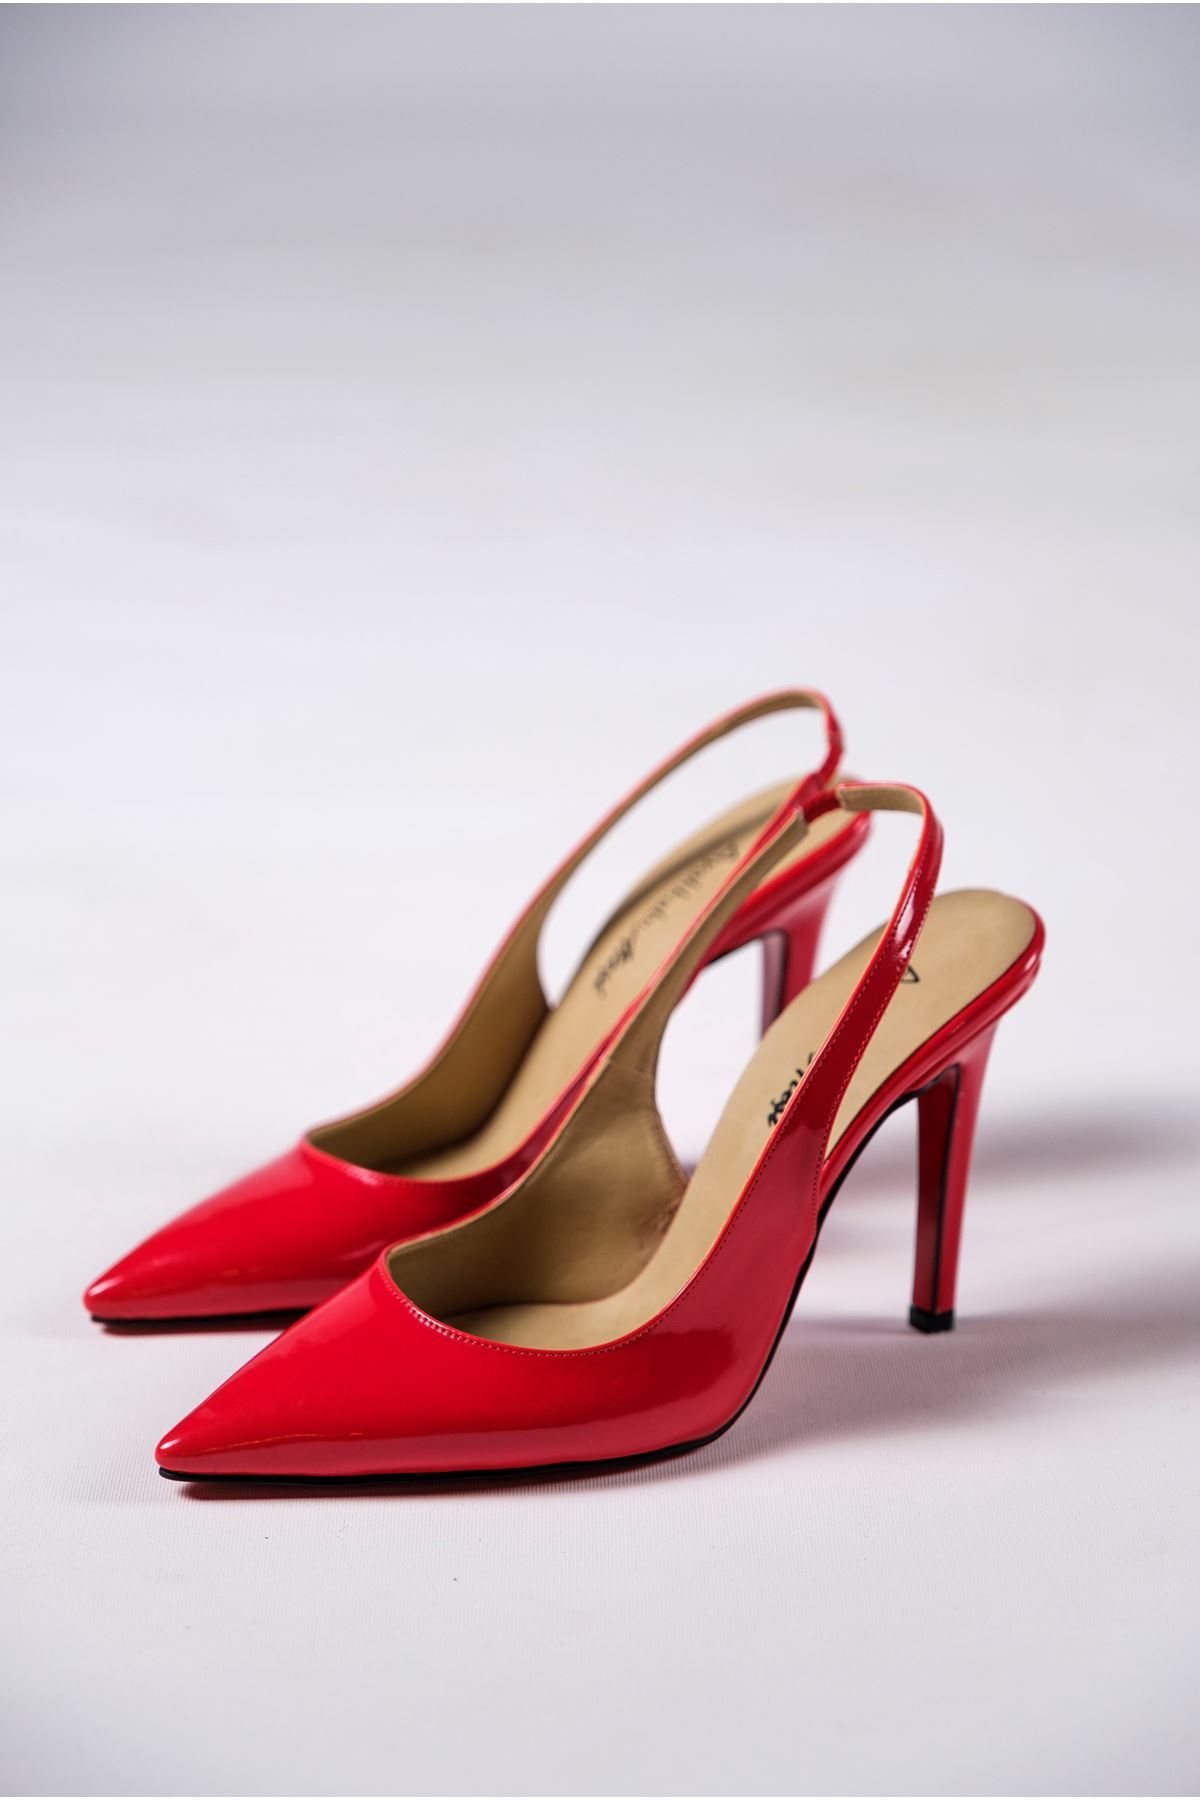 Kırmızı Rugan Kadın Topuklu Özel Tasarım Ayakkabı Stiletto Madison